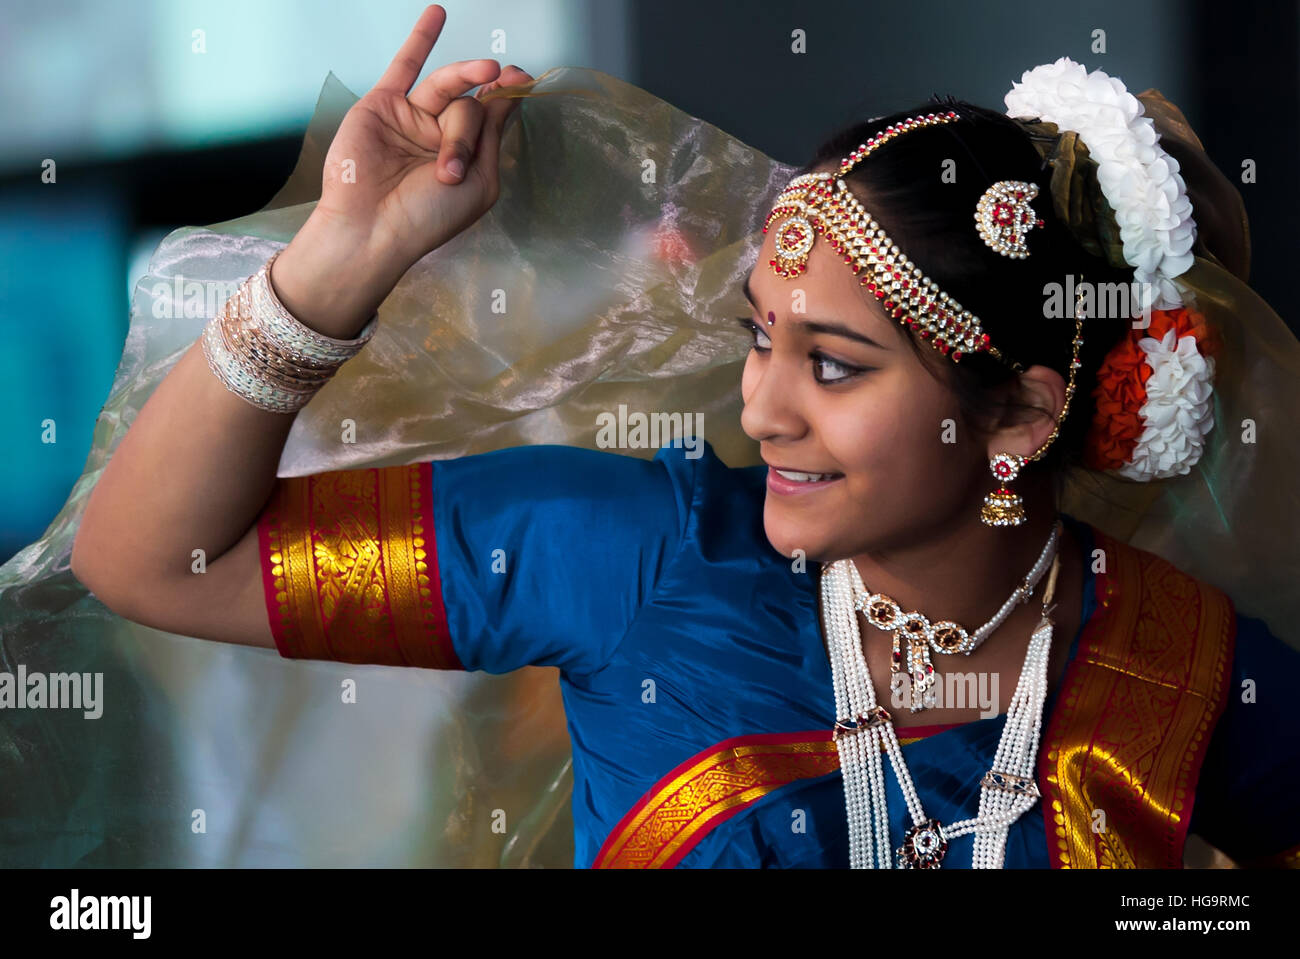 Ragazze vestite di tradional South Asian dress eseguire in corrispondenza di un evento culturale. Foto Stock